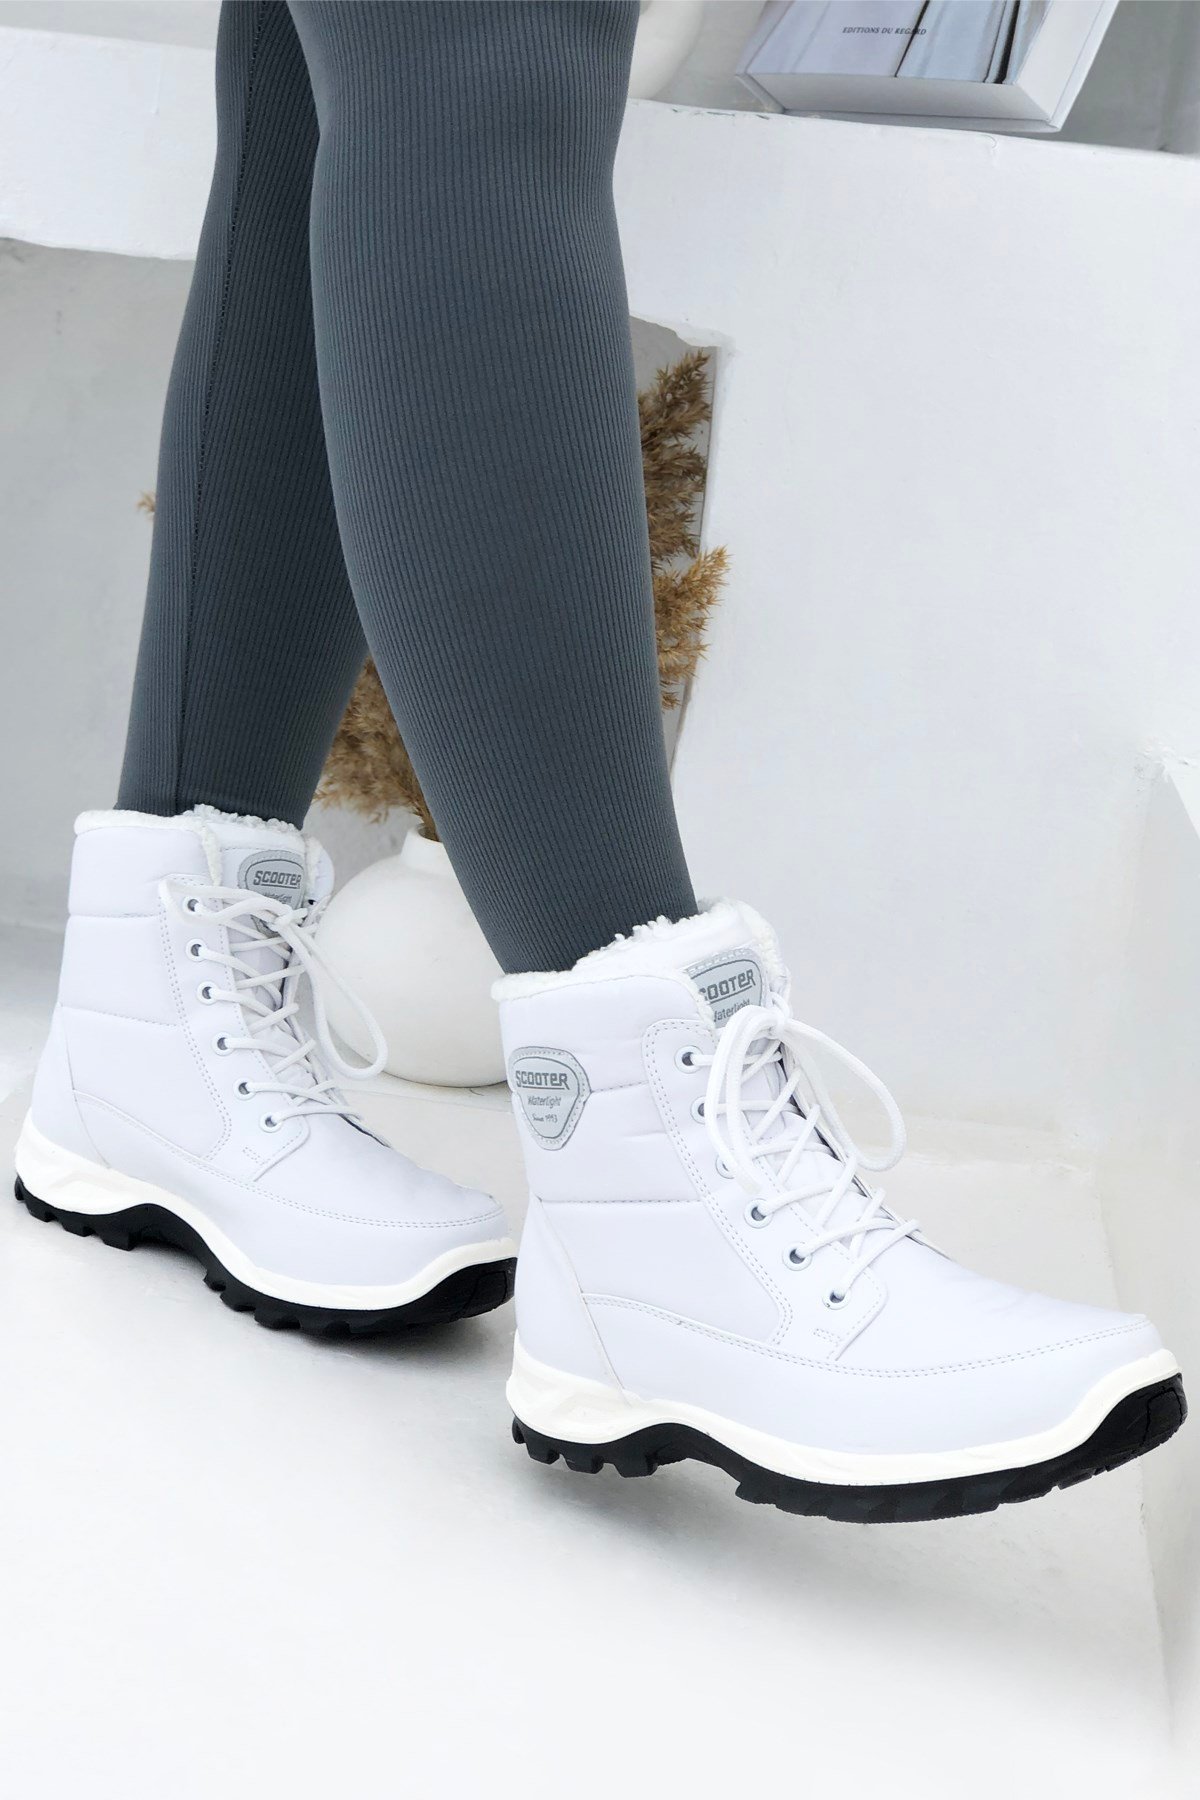 SCOOTER 5548 Kadın Su Geçirmez Bot Tekstil Beyaz | My Bella Shoes